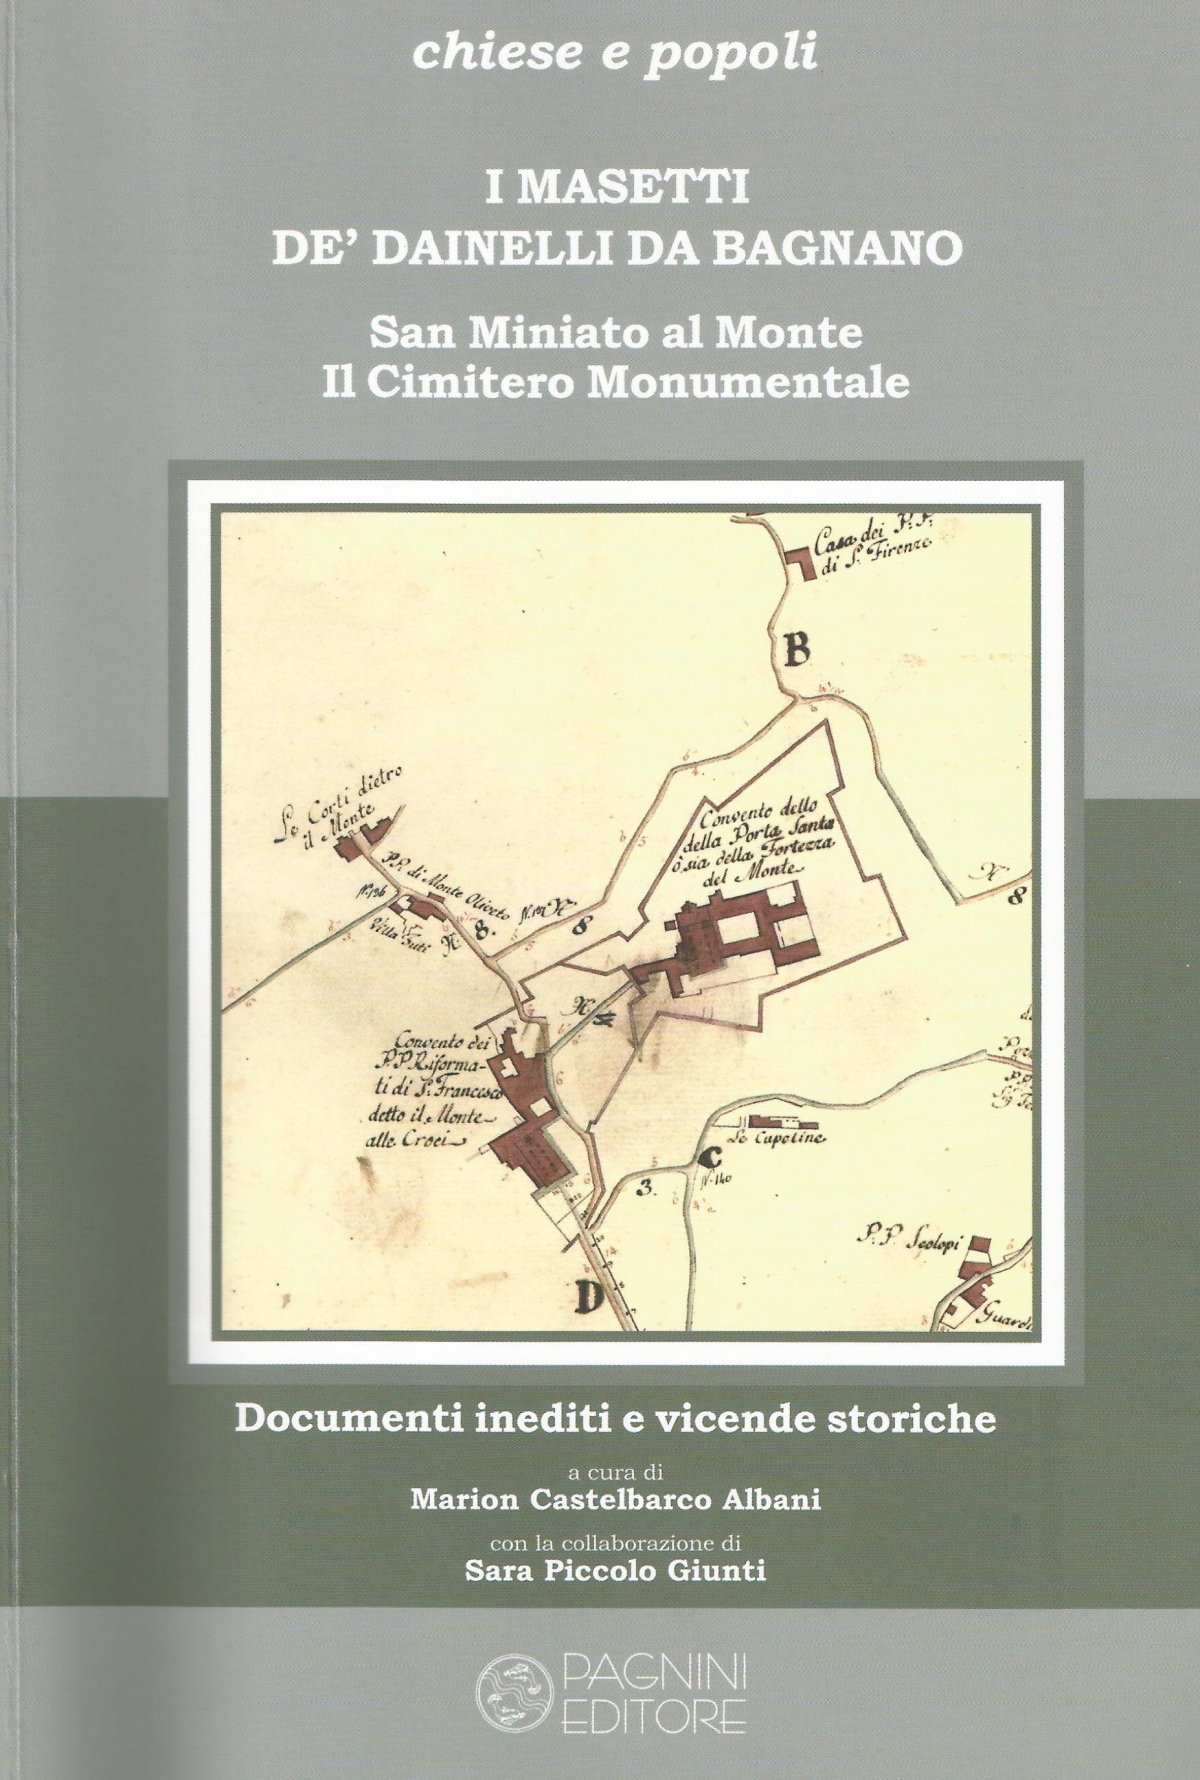 I Masetti de' Dainelli da Bagnano. San Miniato al Monte, il cimitero monumentale